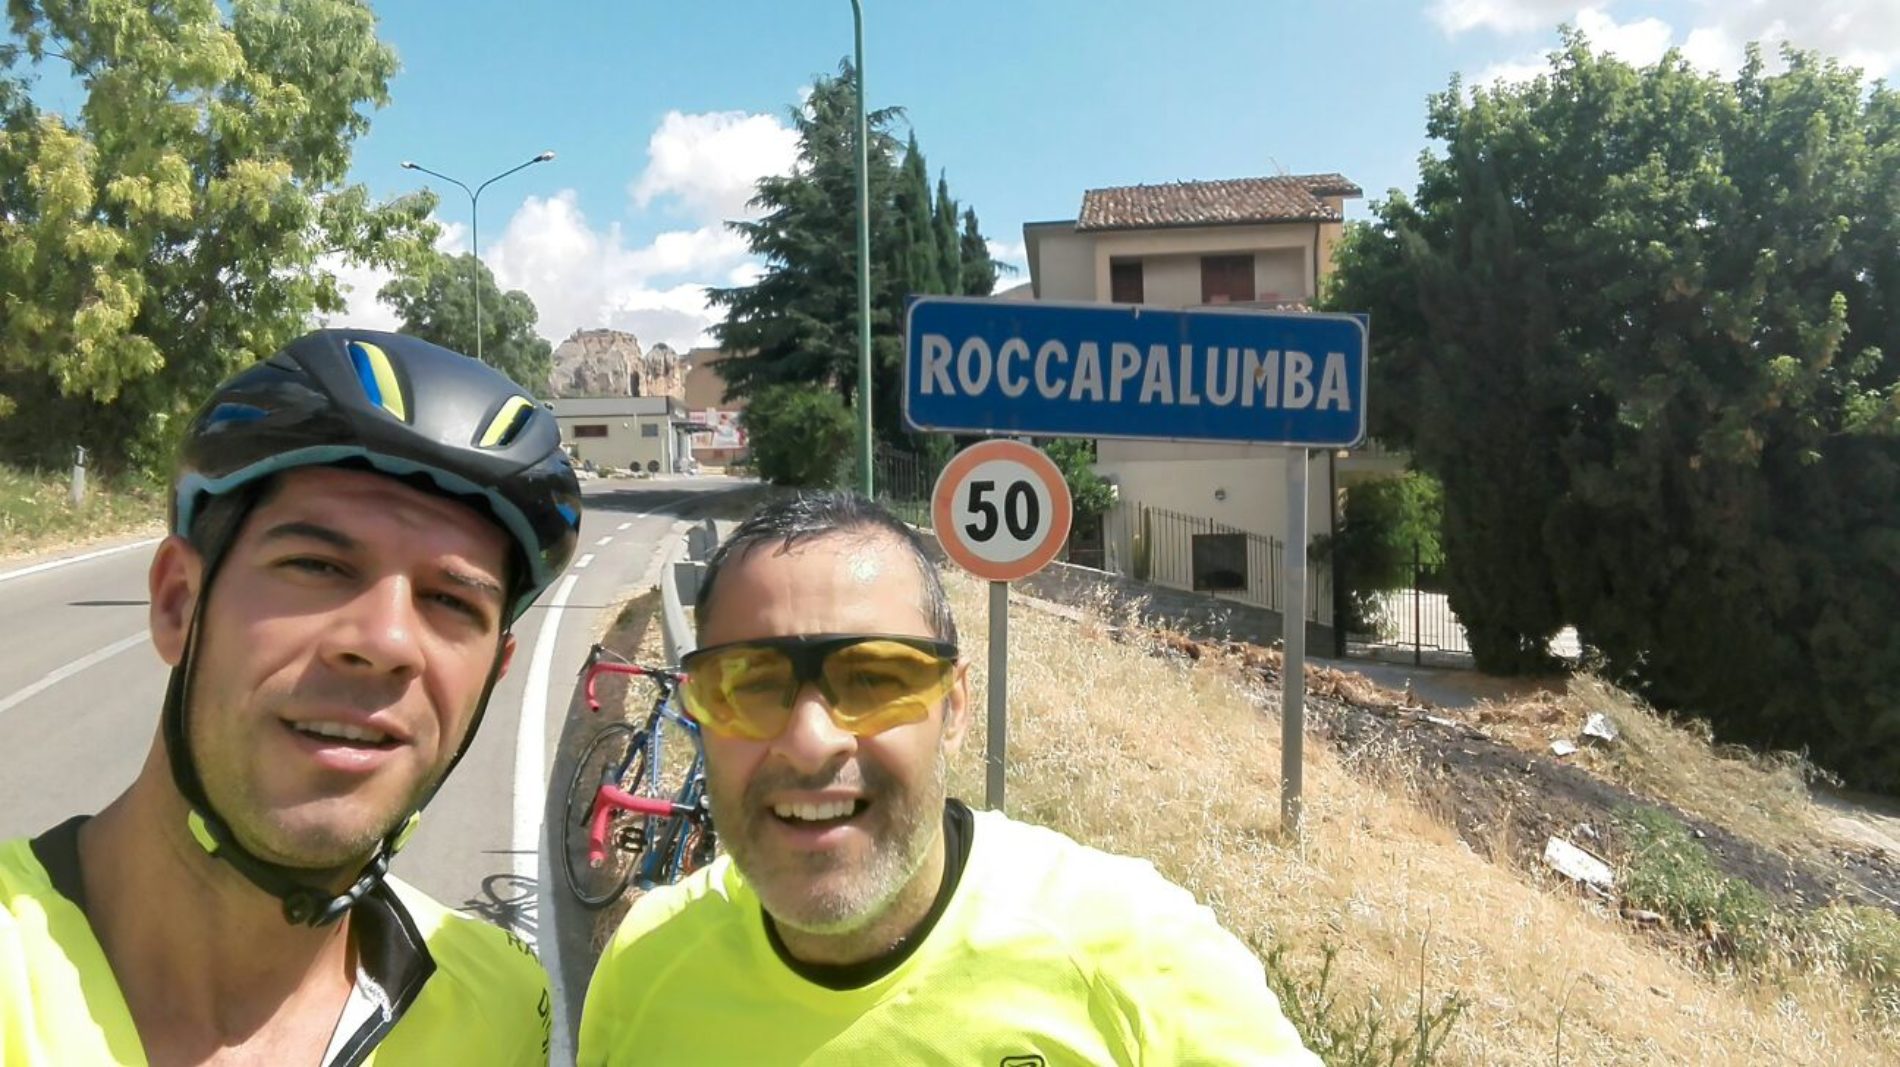 Cumia e Avola in bici dalla loro cittadina raggiungono Palermo affrontando le “Madonie” e il forte caldo